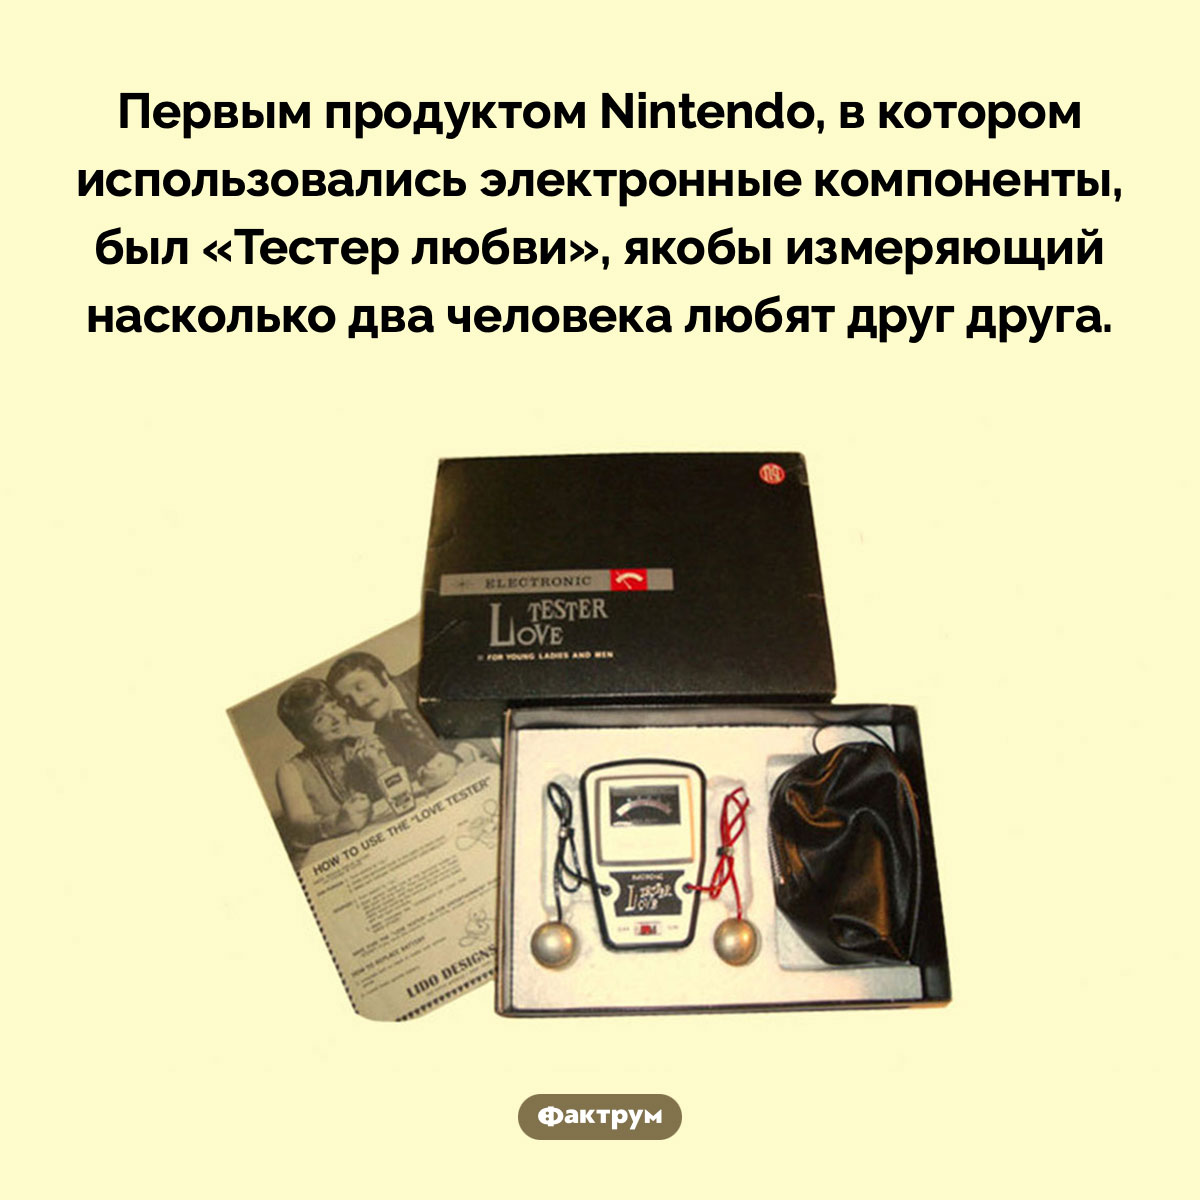 «Тестер любви» от Nintendo. Первым продуктом Nintendo, в котором использовались электронные компоненты, был «Тестер любви», якобы измеряющий насколько два человека любят друг друга.